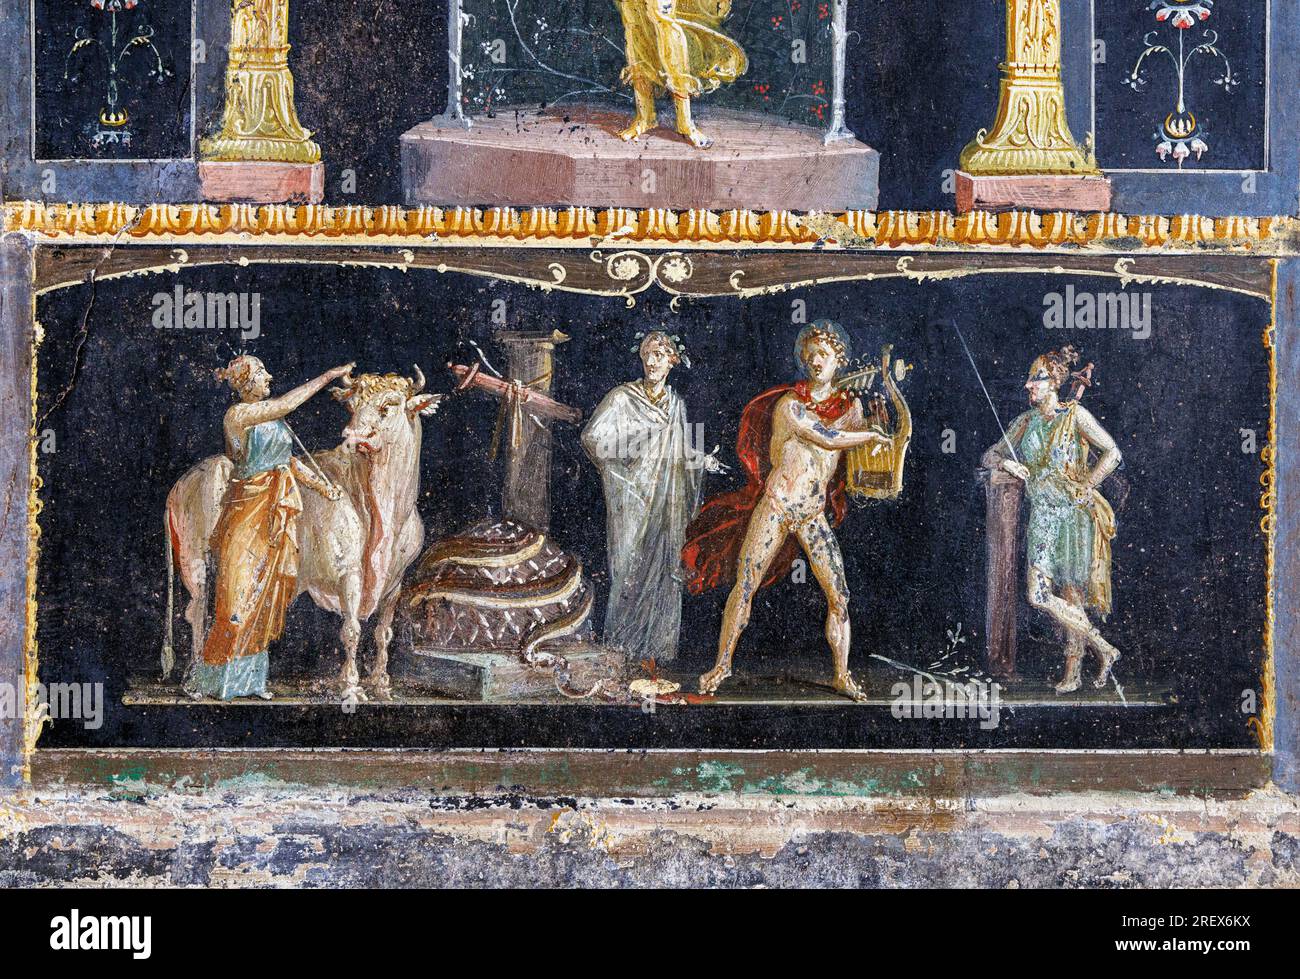 Sito archeologico di Pompei, Campania, Italia. Affresco che illustra la storia della mitologia greca di Apollo e Diana dopo l'uccisione di Pitone. Foto Stock